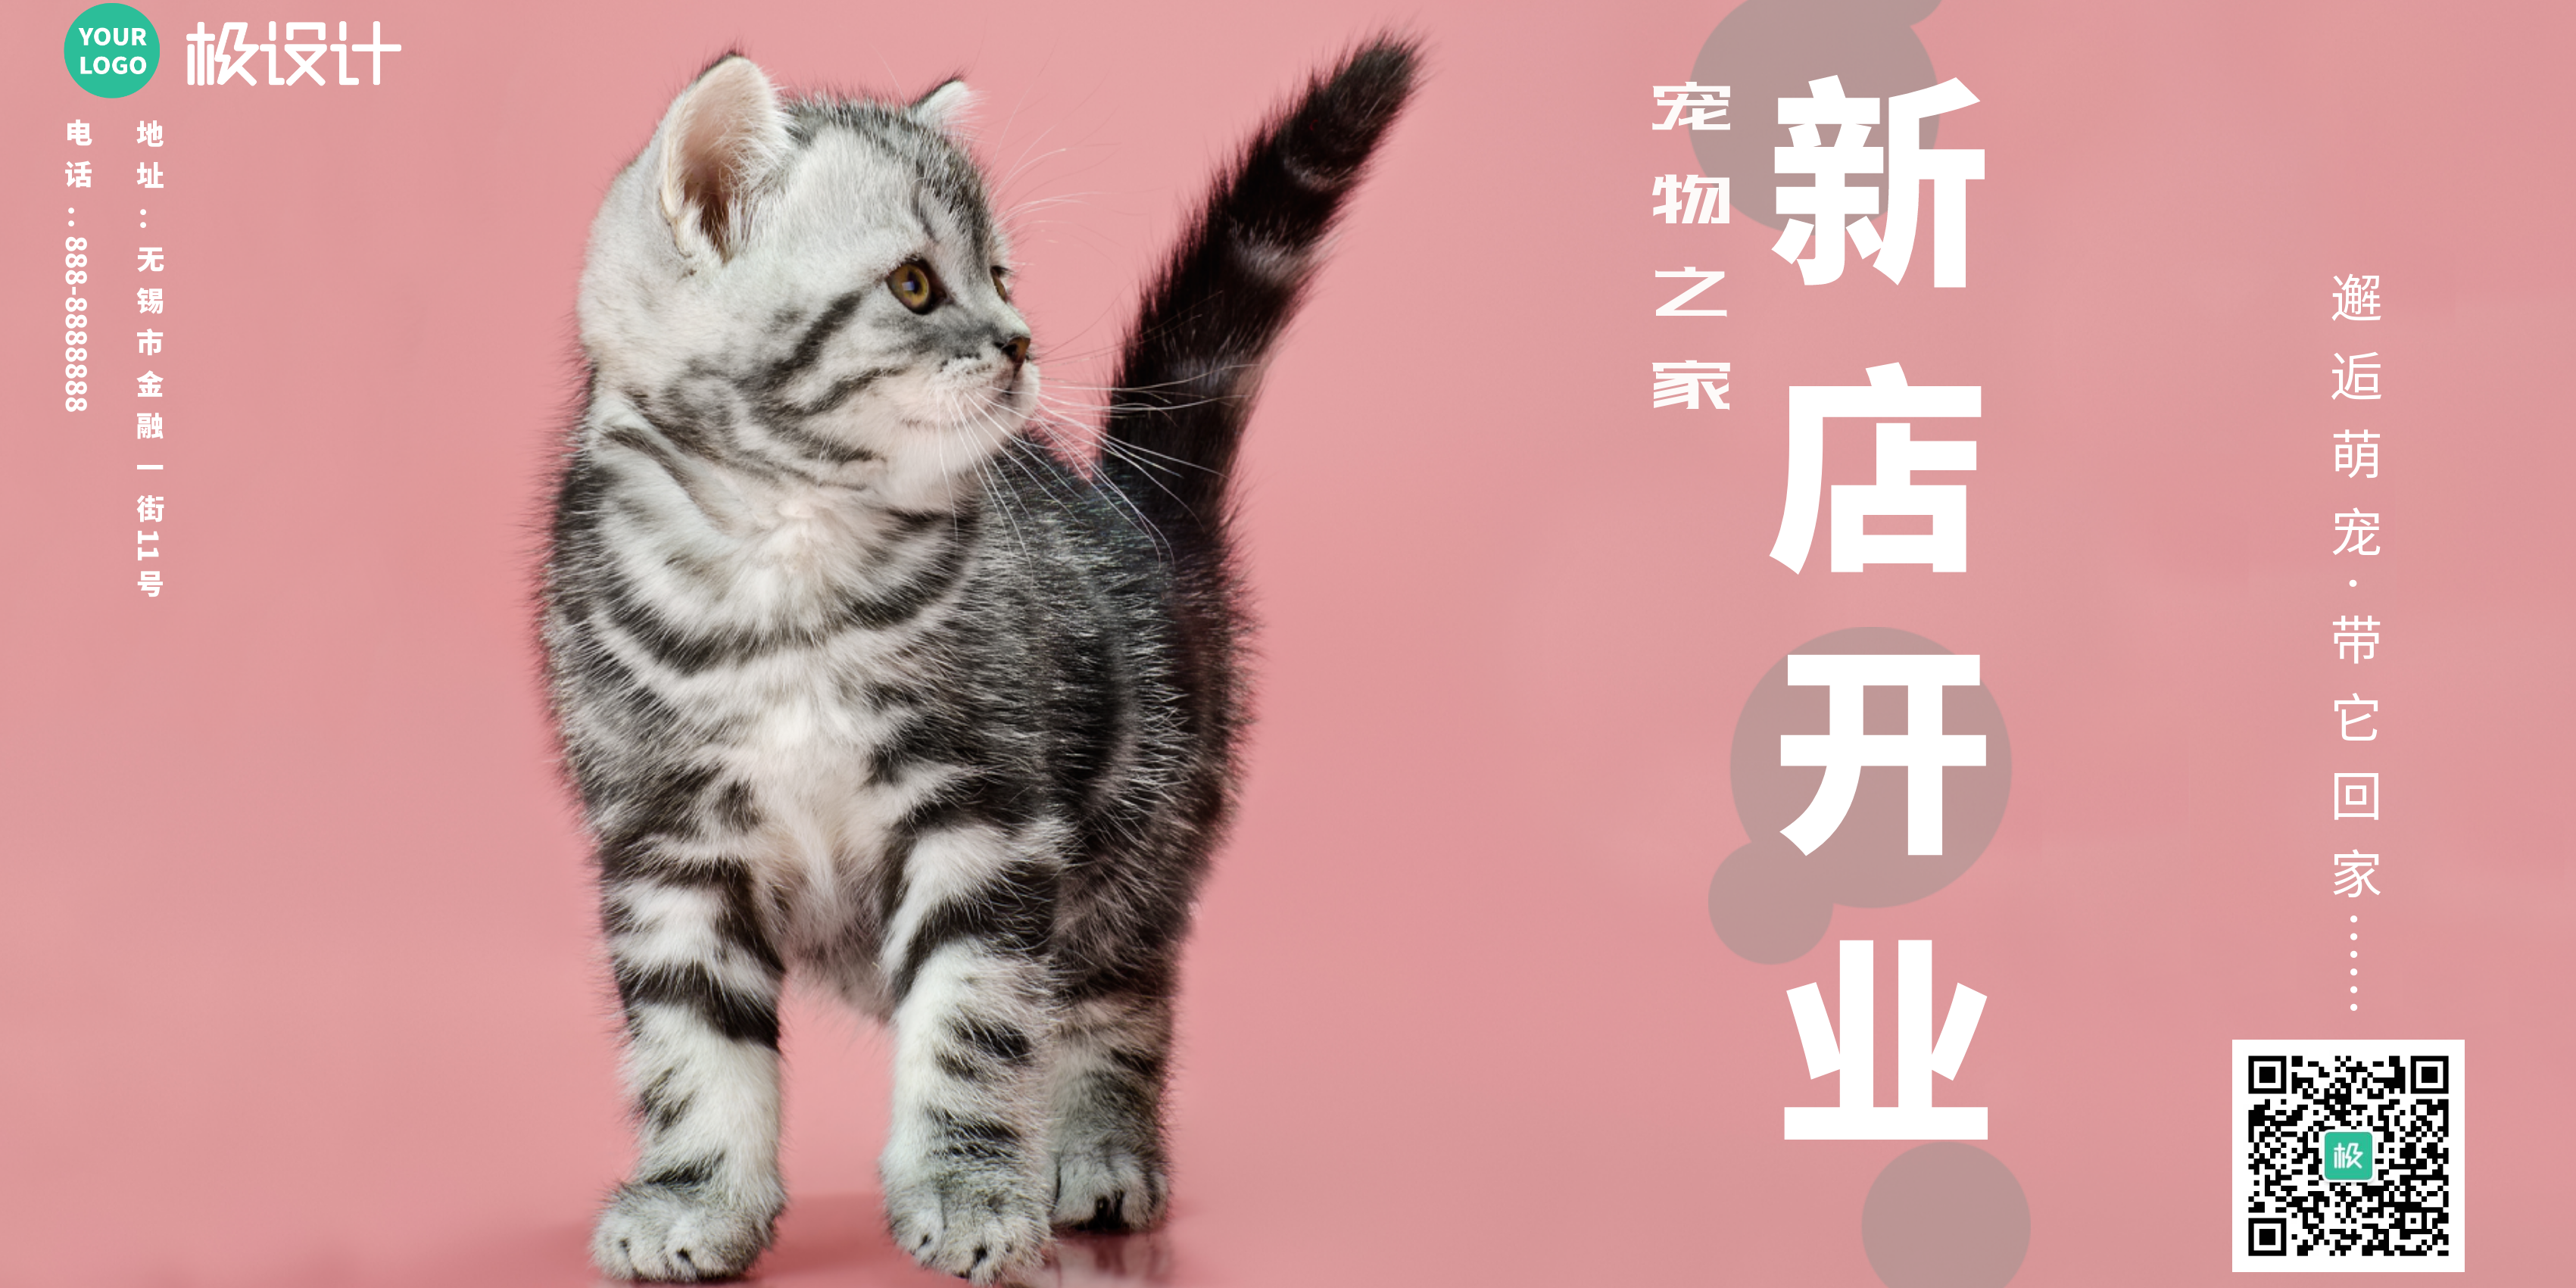 宠物猫主题促销活动商业推广海报